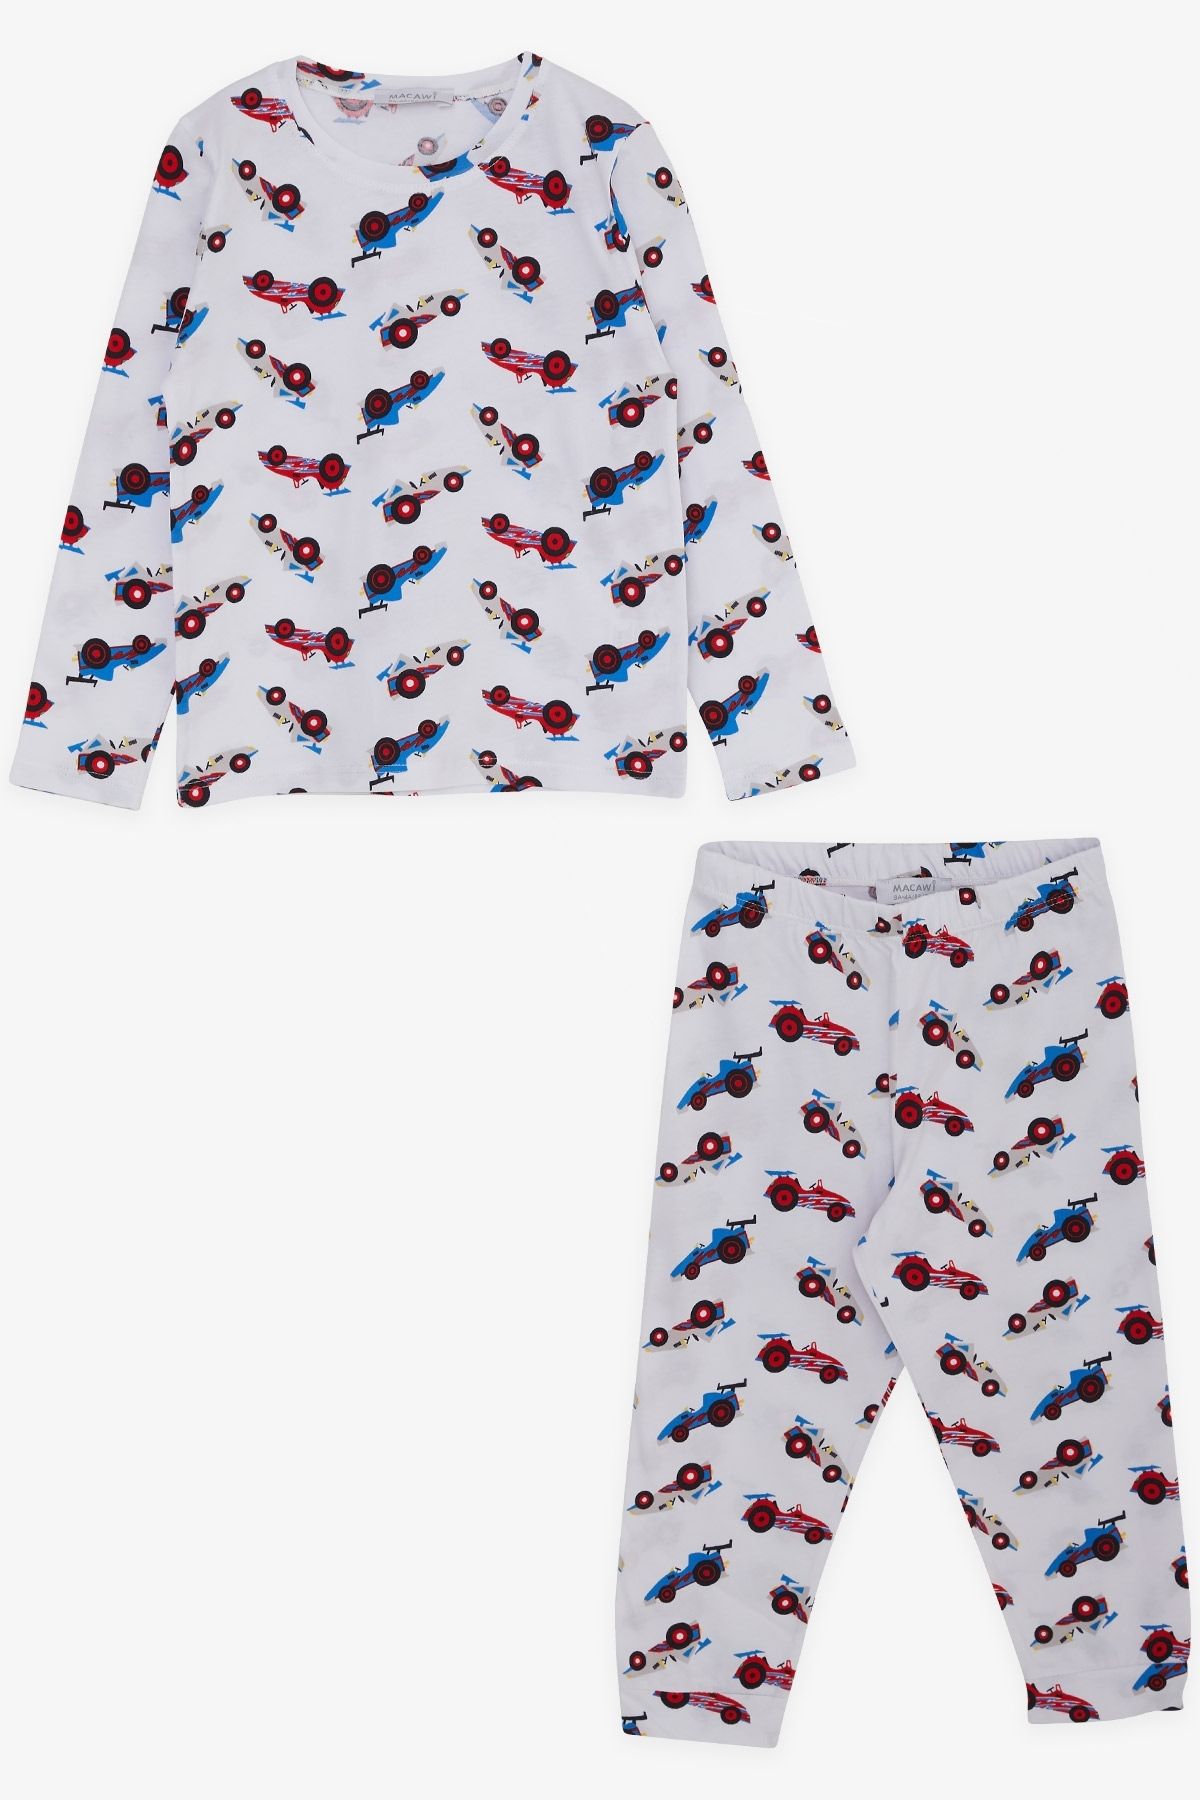 Macawi Erkek Çocuk Pijama Takımı Yarış Arabası Temalı 3-7 Yaş, Beyaz